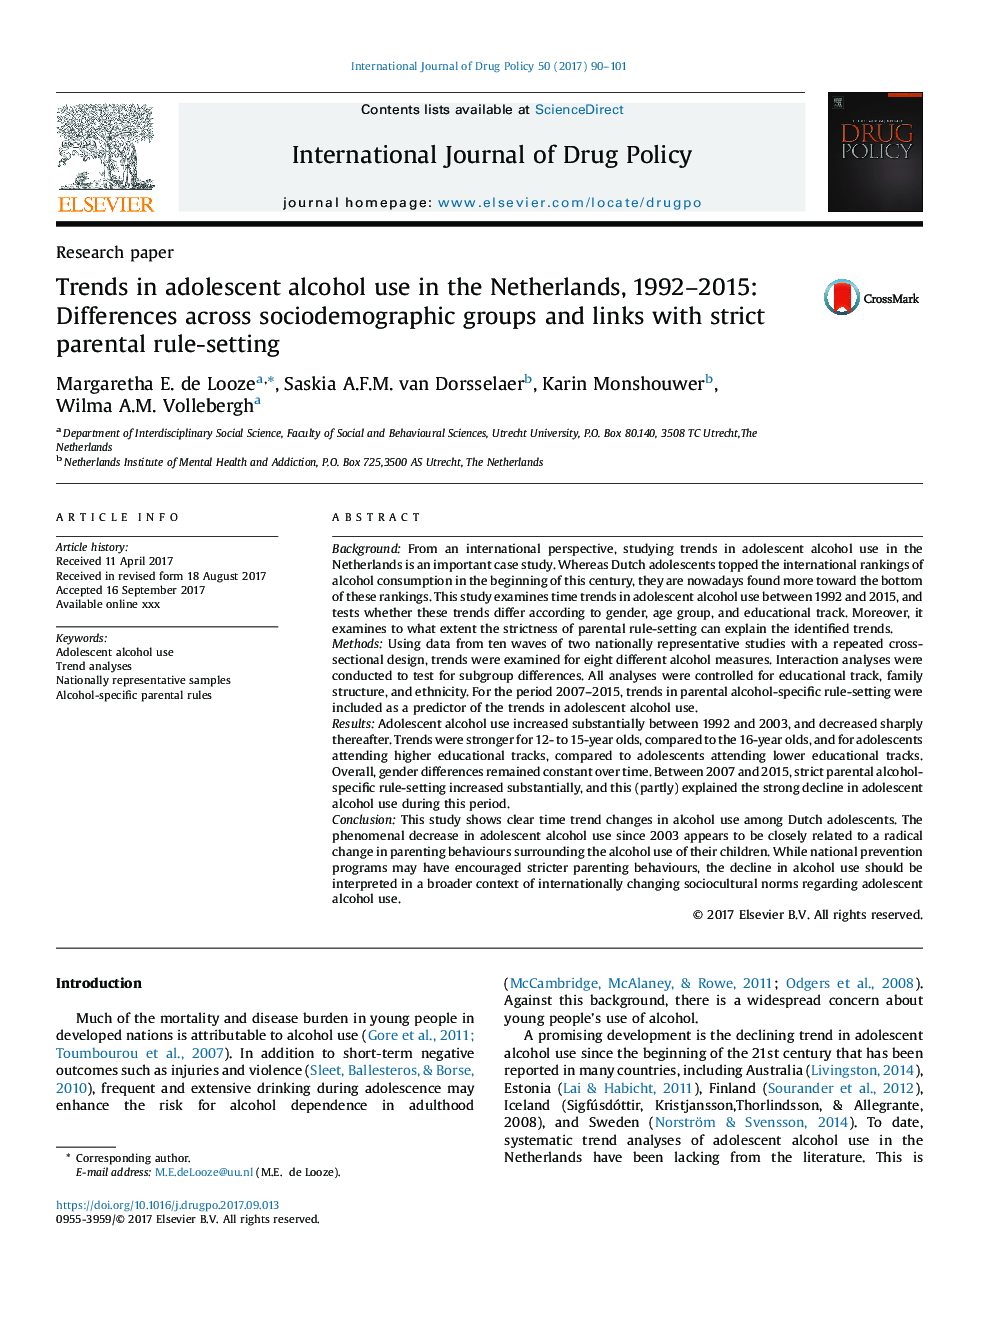 روند رو به رشد مصرف الکل نوجوانان در هلند، 1992-2015: تفاوت در گروه های اجتماعی و ارتباط با قوانین تنظیم والدین 